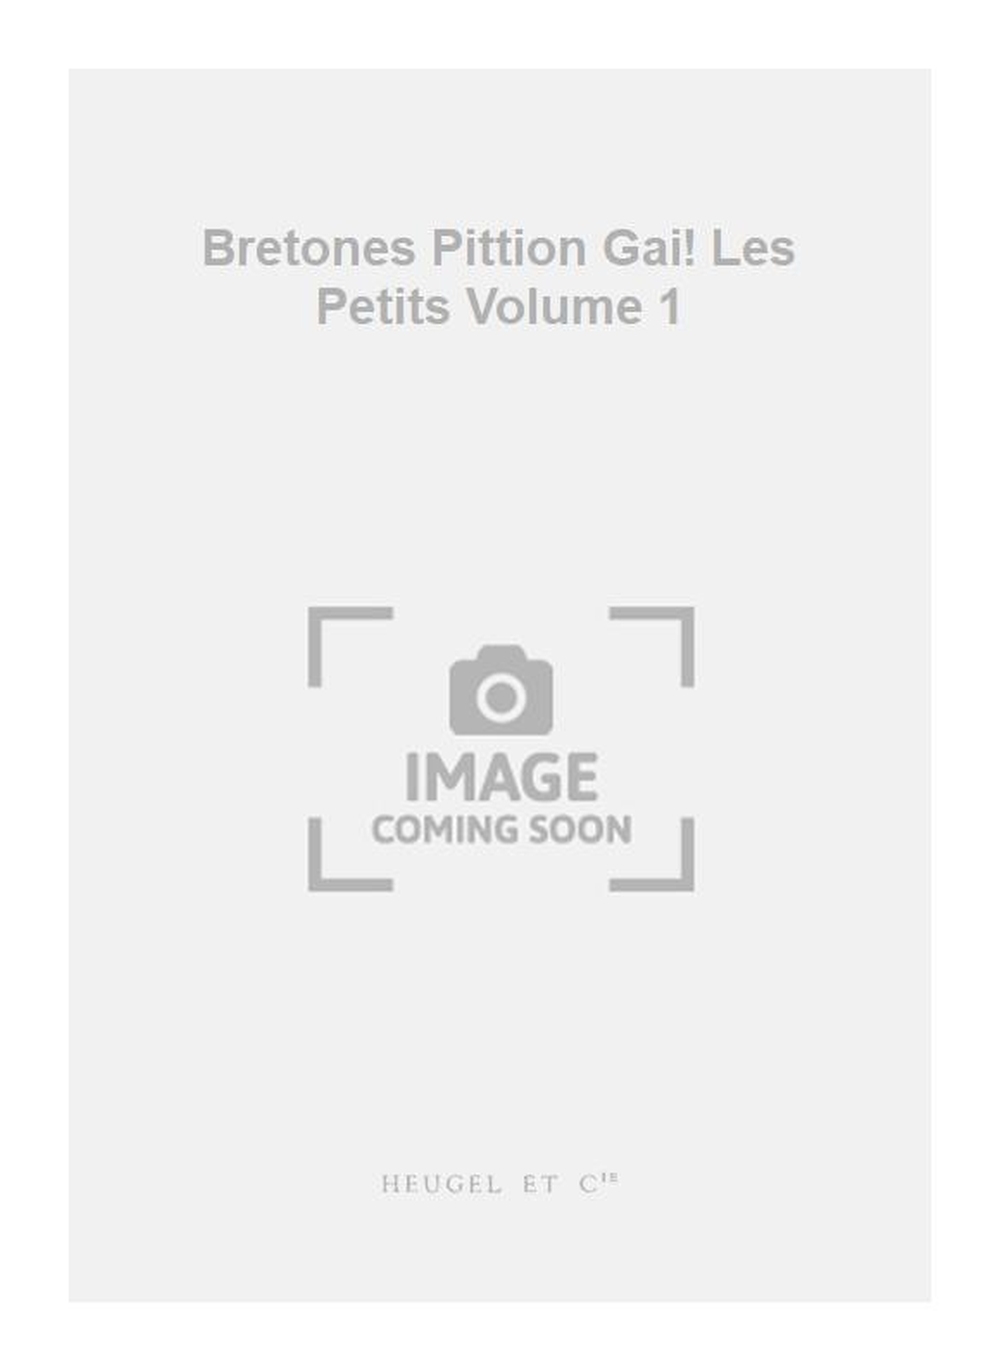 Bretones Pittion: Bretones Pittion Gai! Les Petits Volume 1